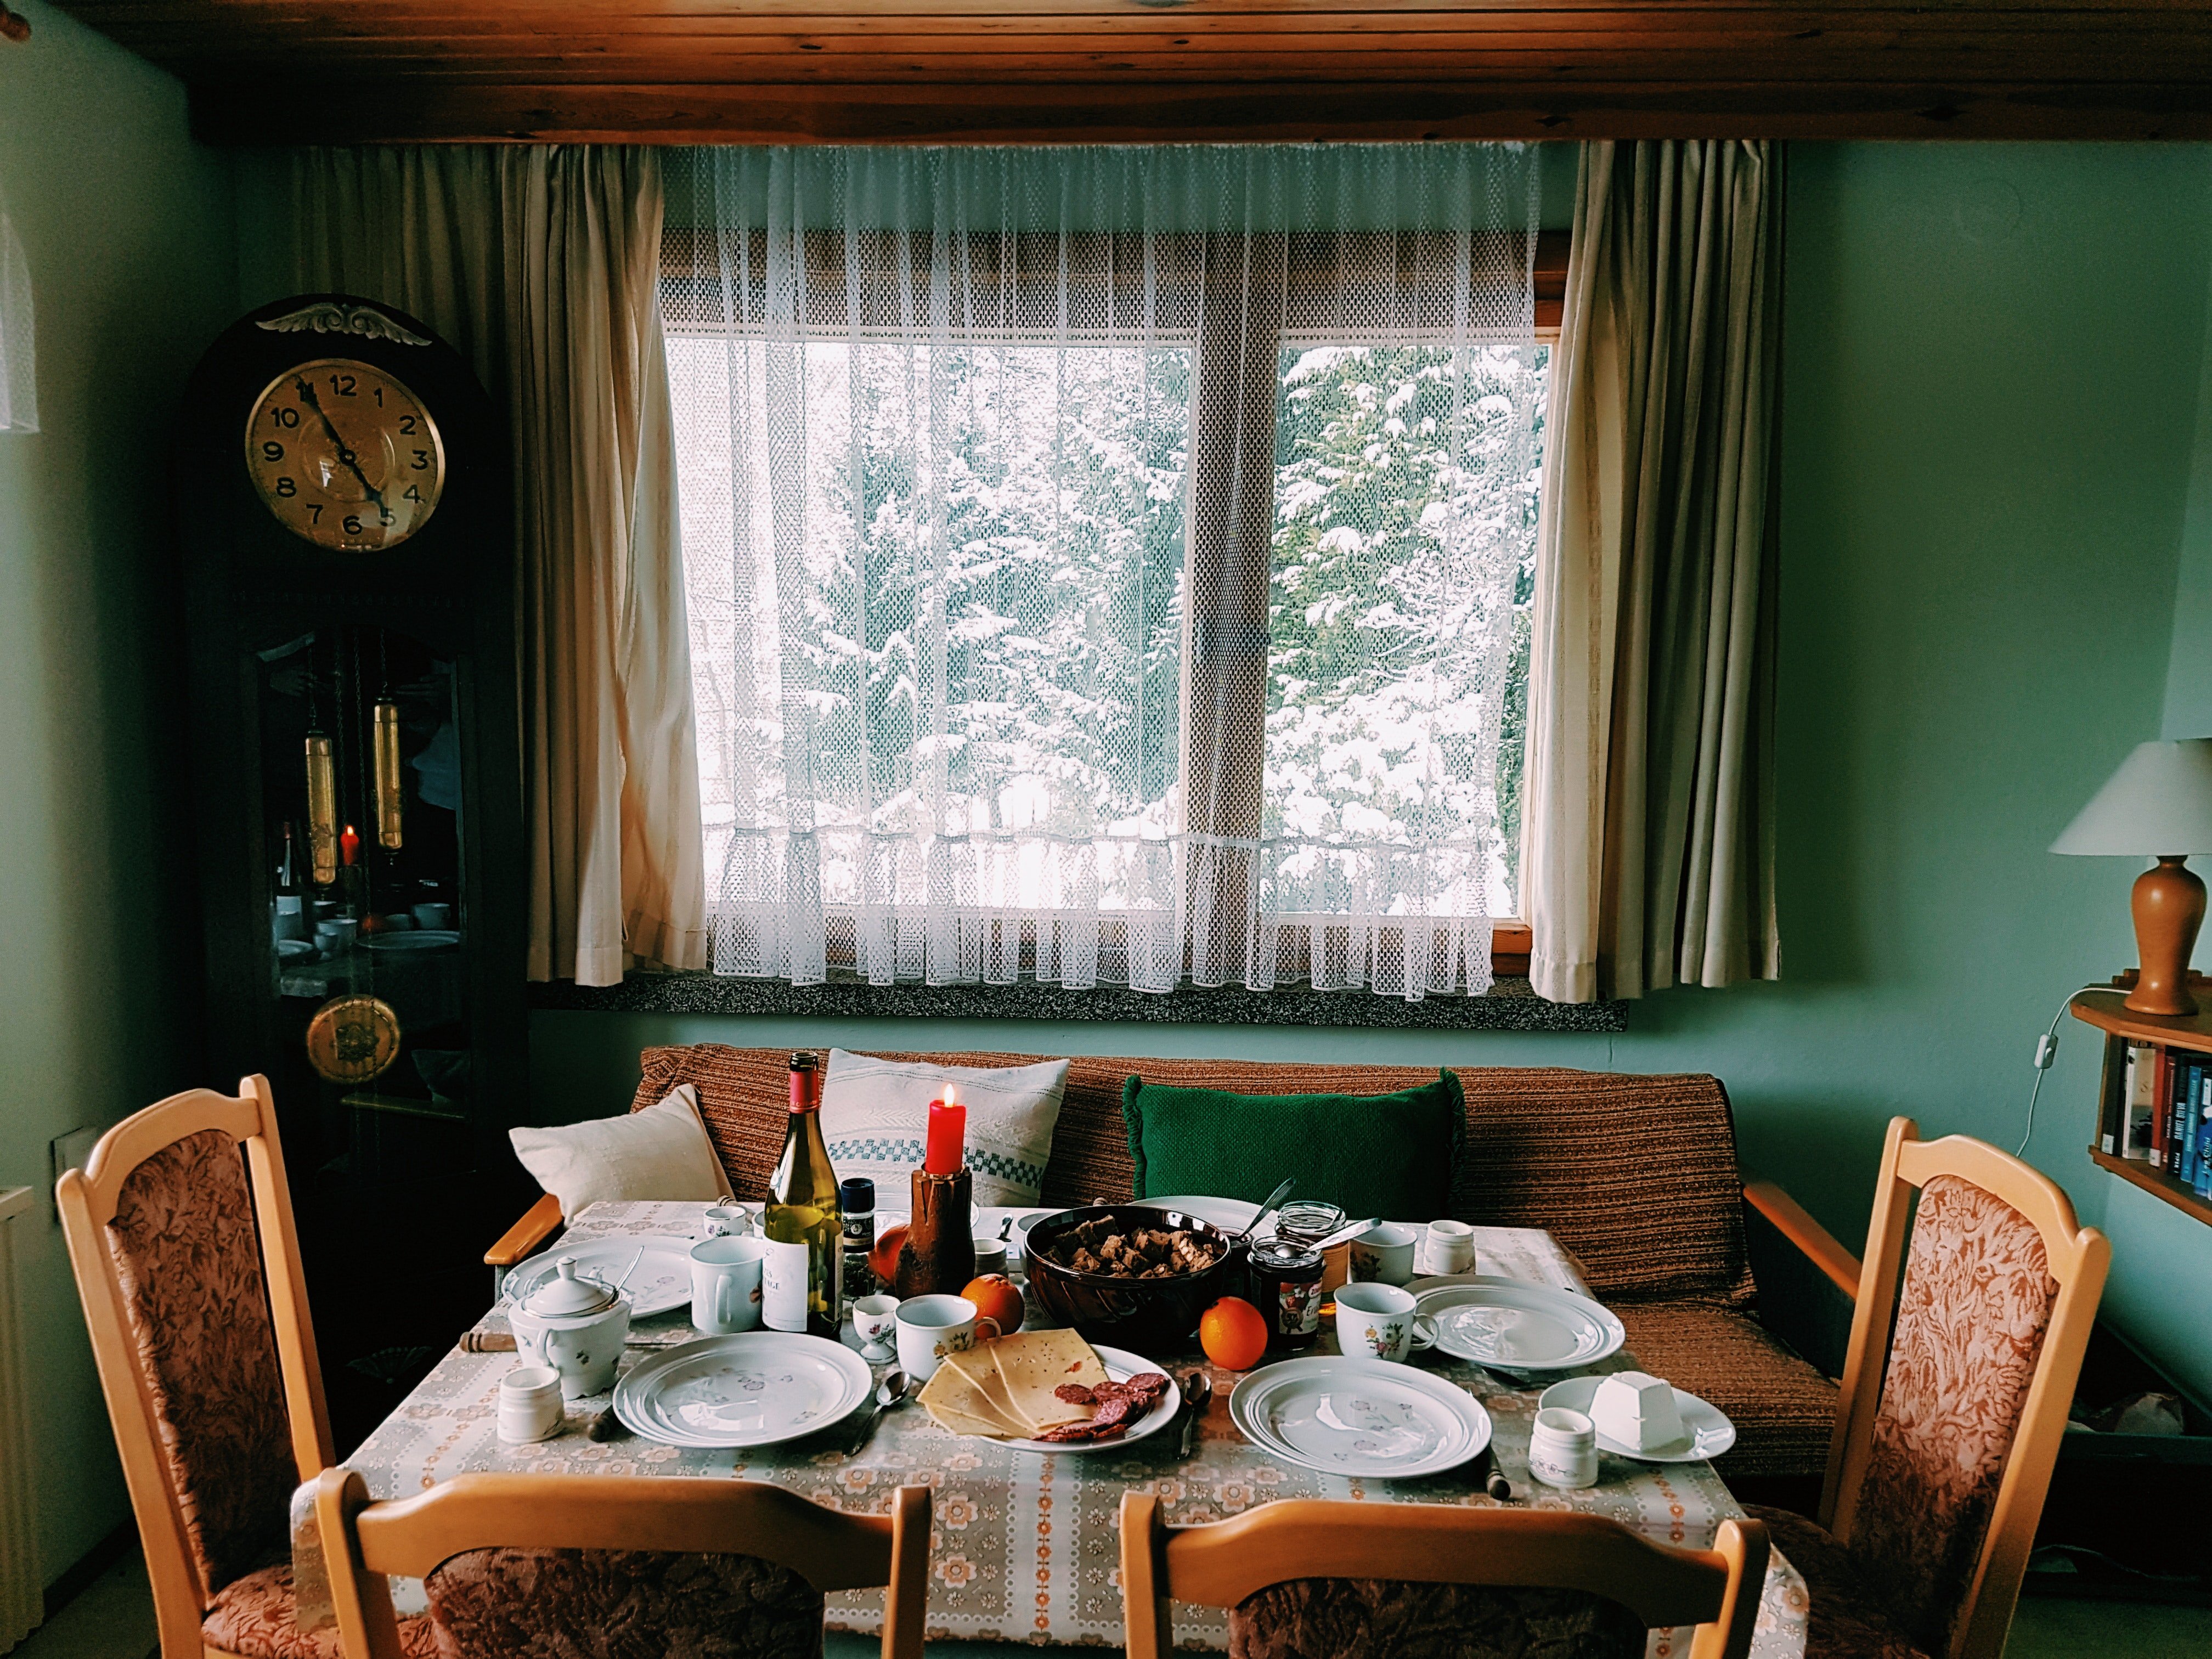 Mesa de comedor. | Foto: Pexels